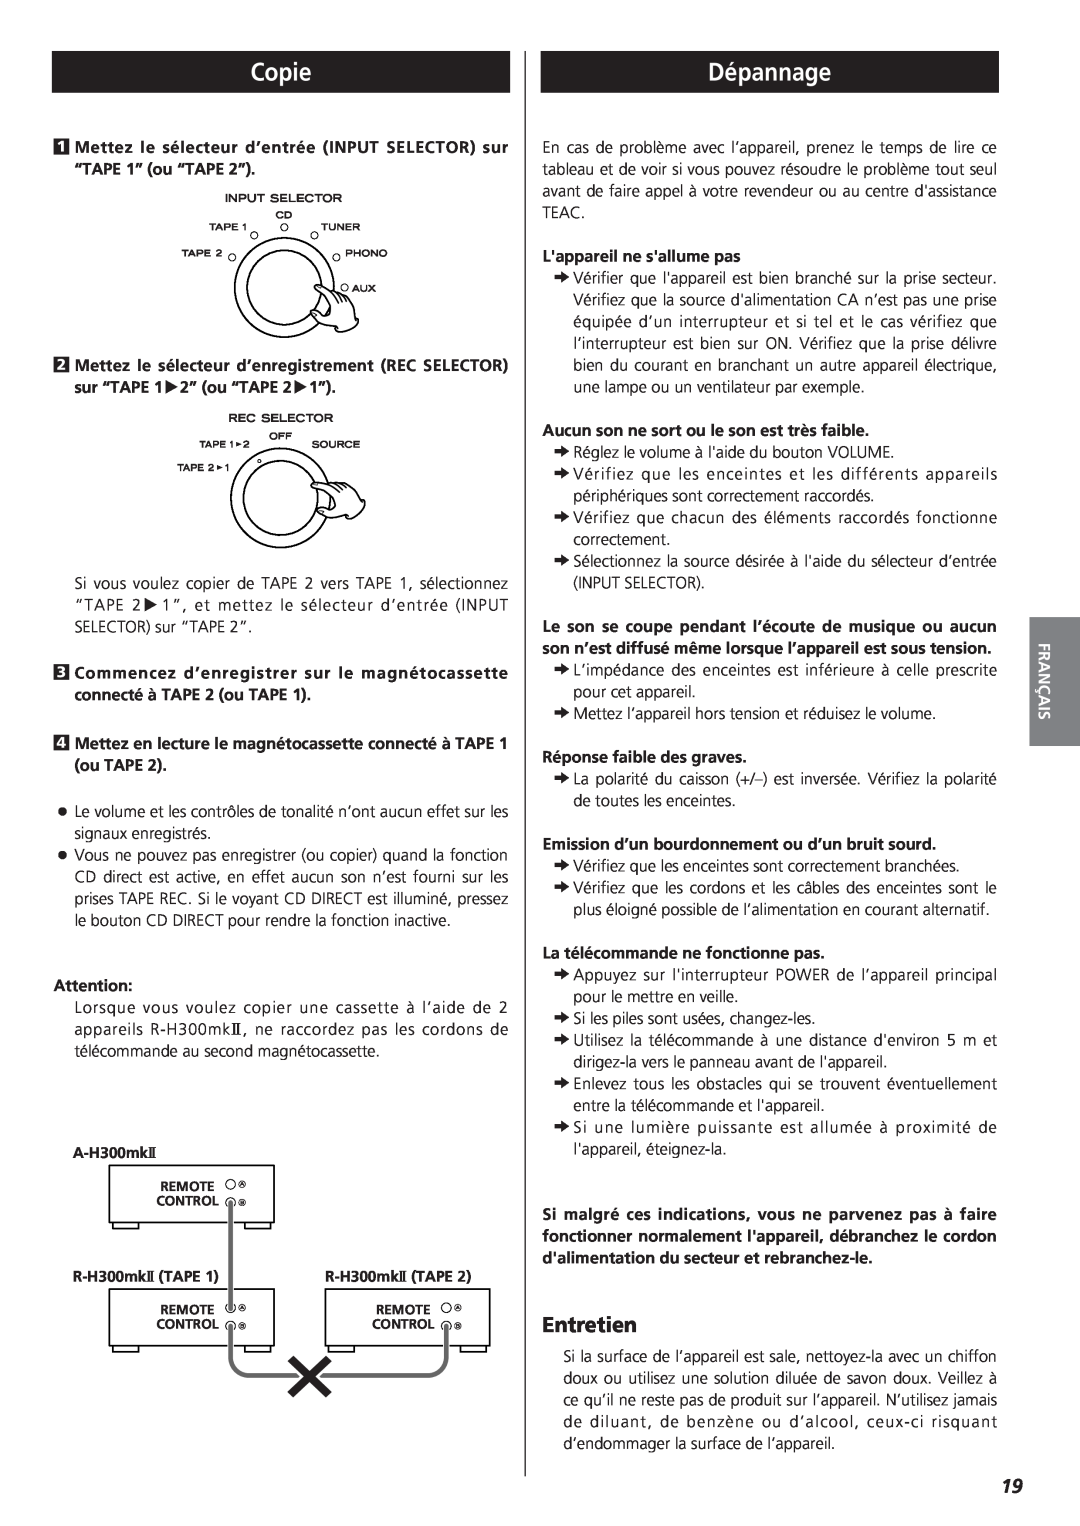 Teac A-H300mkII owner manual Copie, Dépannage, Entretien, Français 